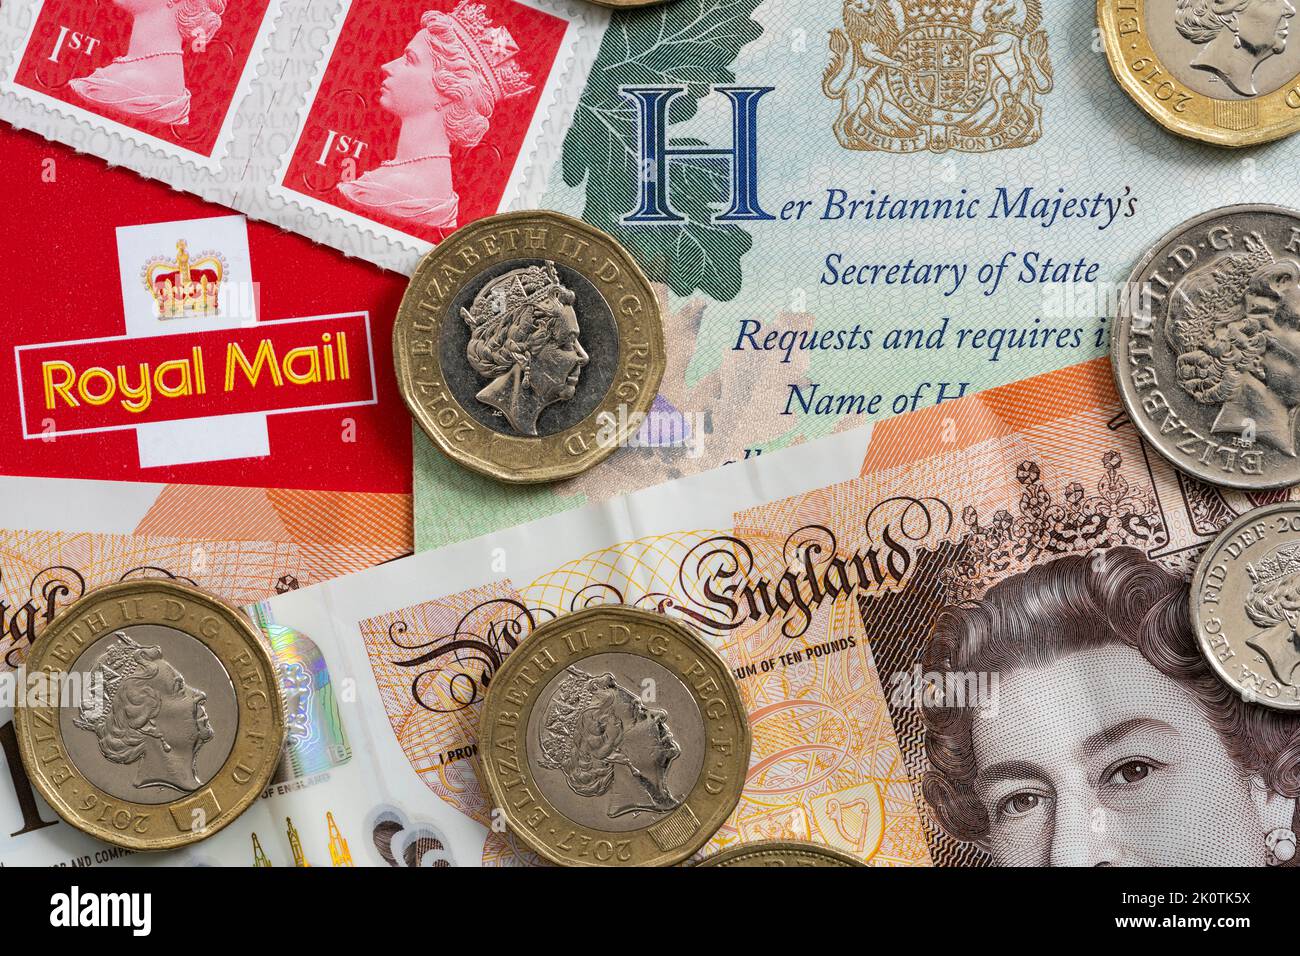 Sacar el nombre y la imagen de la Reina Isabel II de la vida pública llevará algún tiempo - página del pasaporte, sellos y monedas que llevan la iconografía de la reina Foto de stock